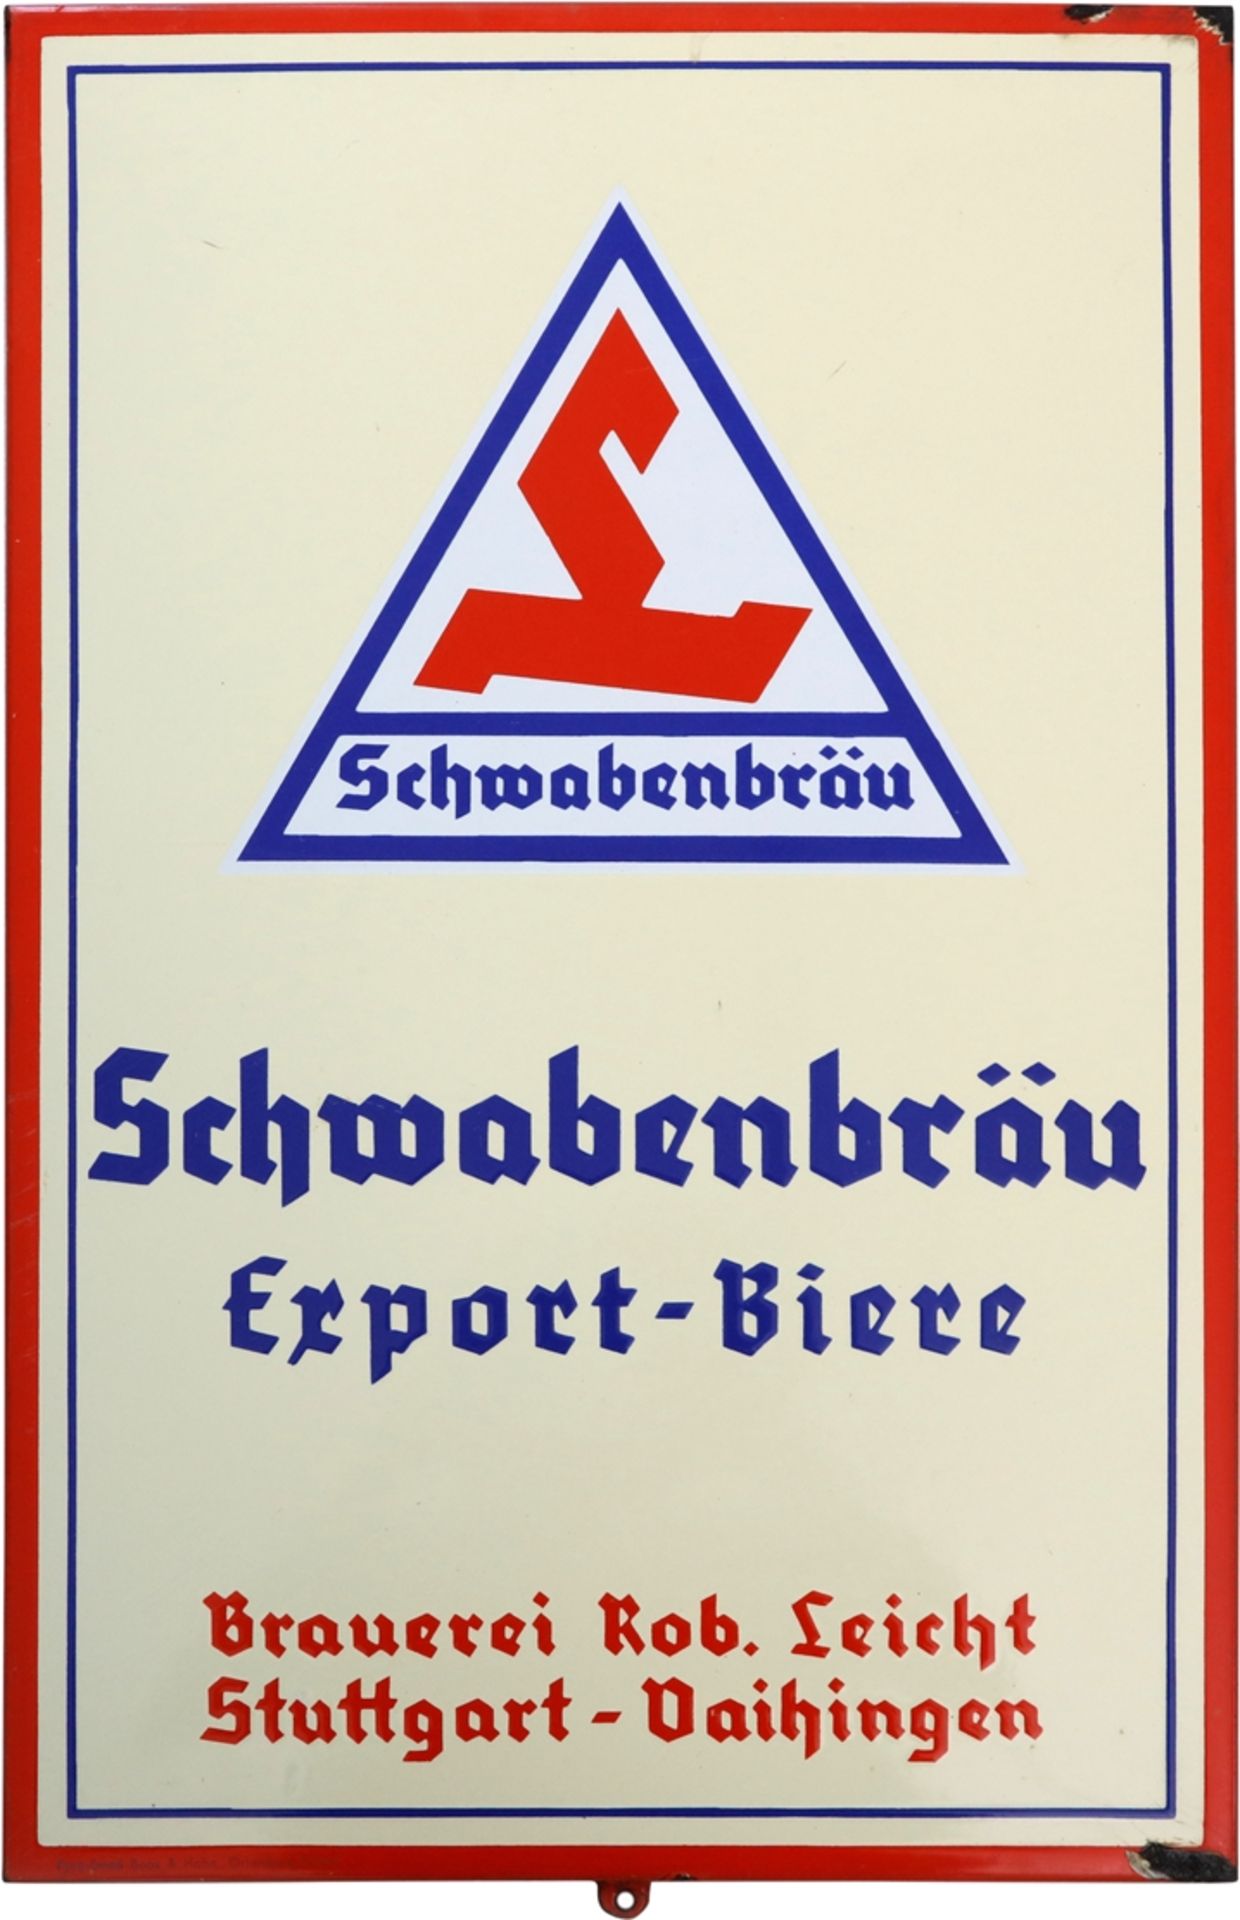 Enamel sign Schwabenbräu, brewery Rob. Leicht, Stuttgart-Vaihingen, around 1950